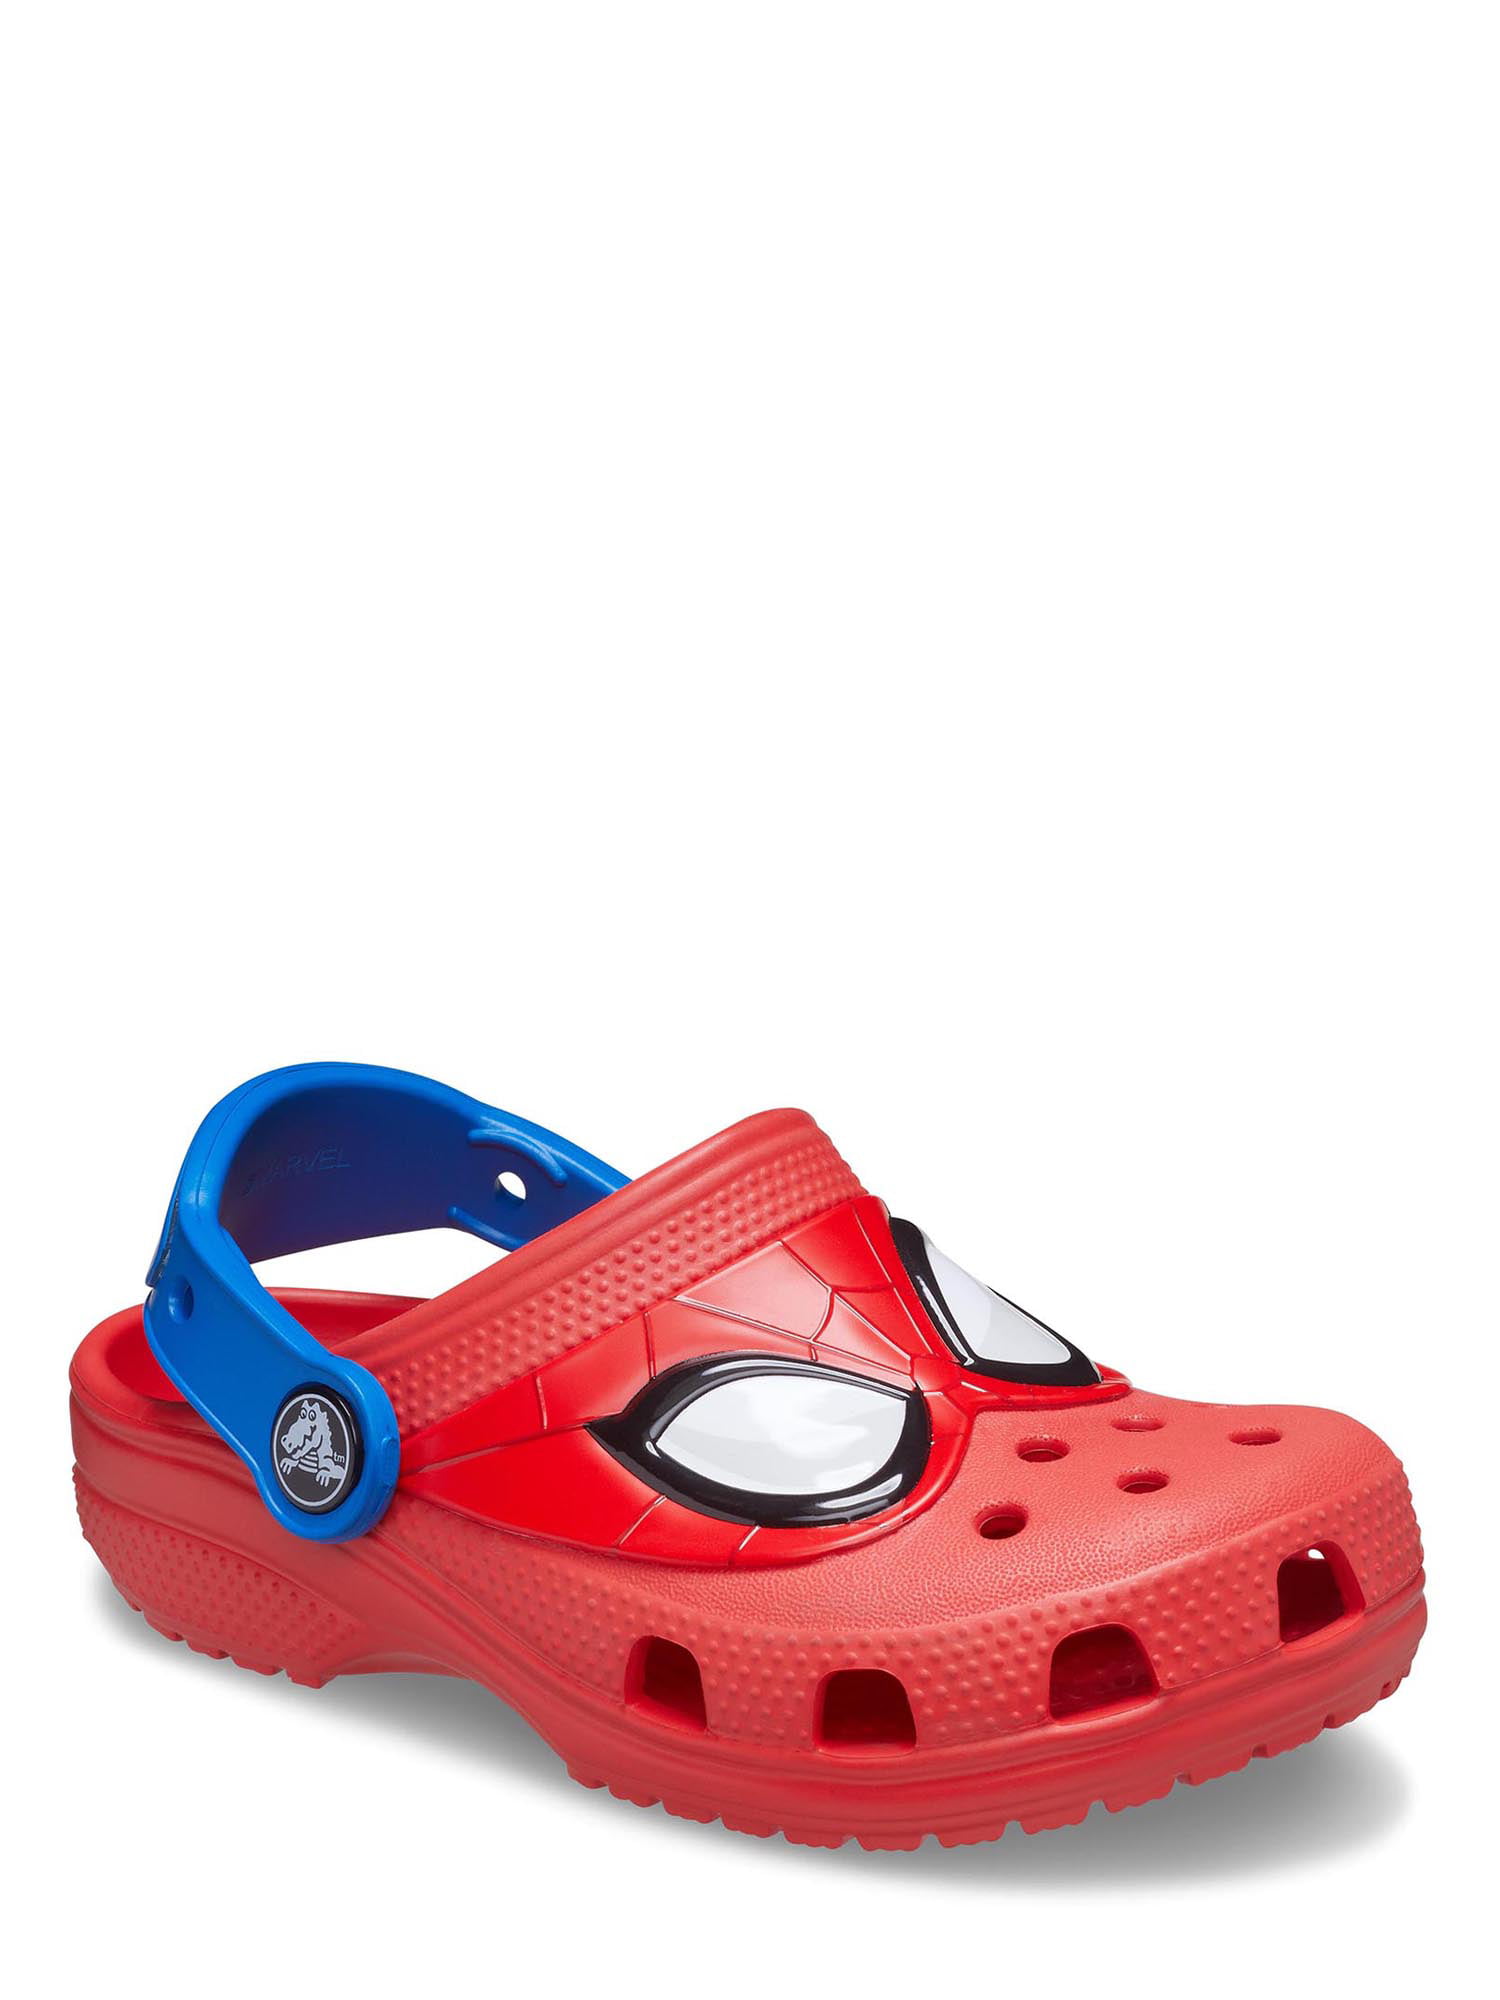 Crocs Fun Classic Marvel Spider Man Clog Junior (Ages 7+) - Walmart.com